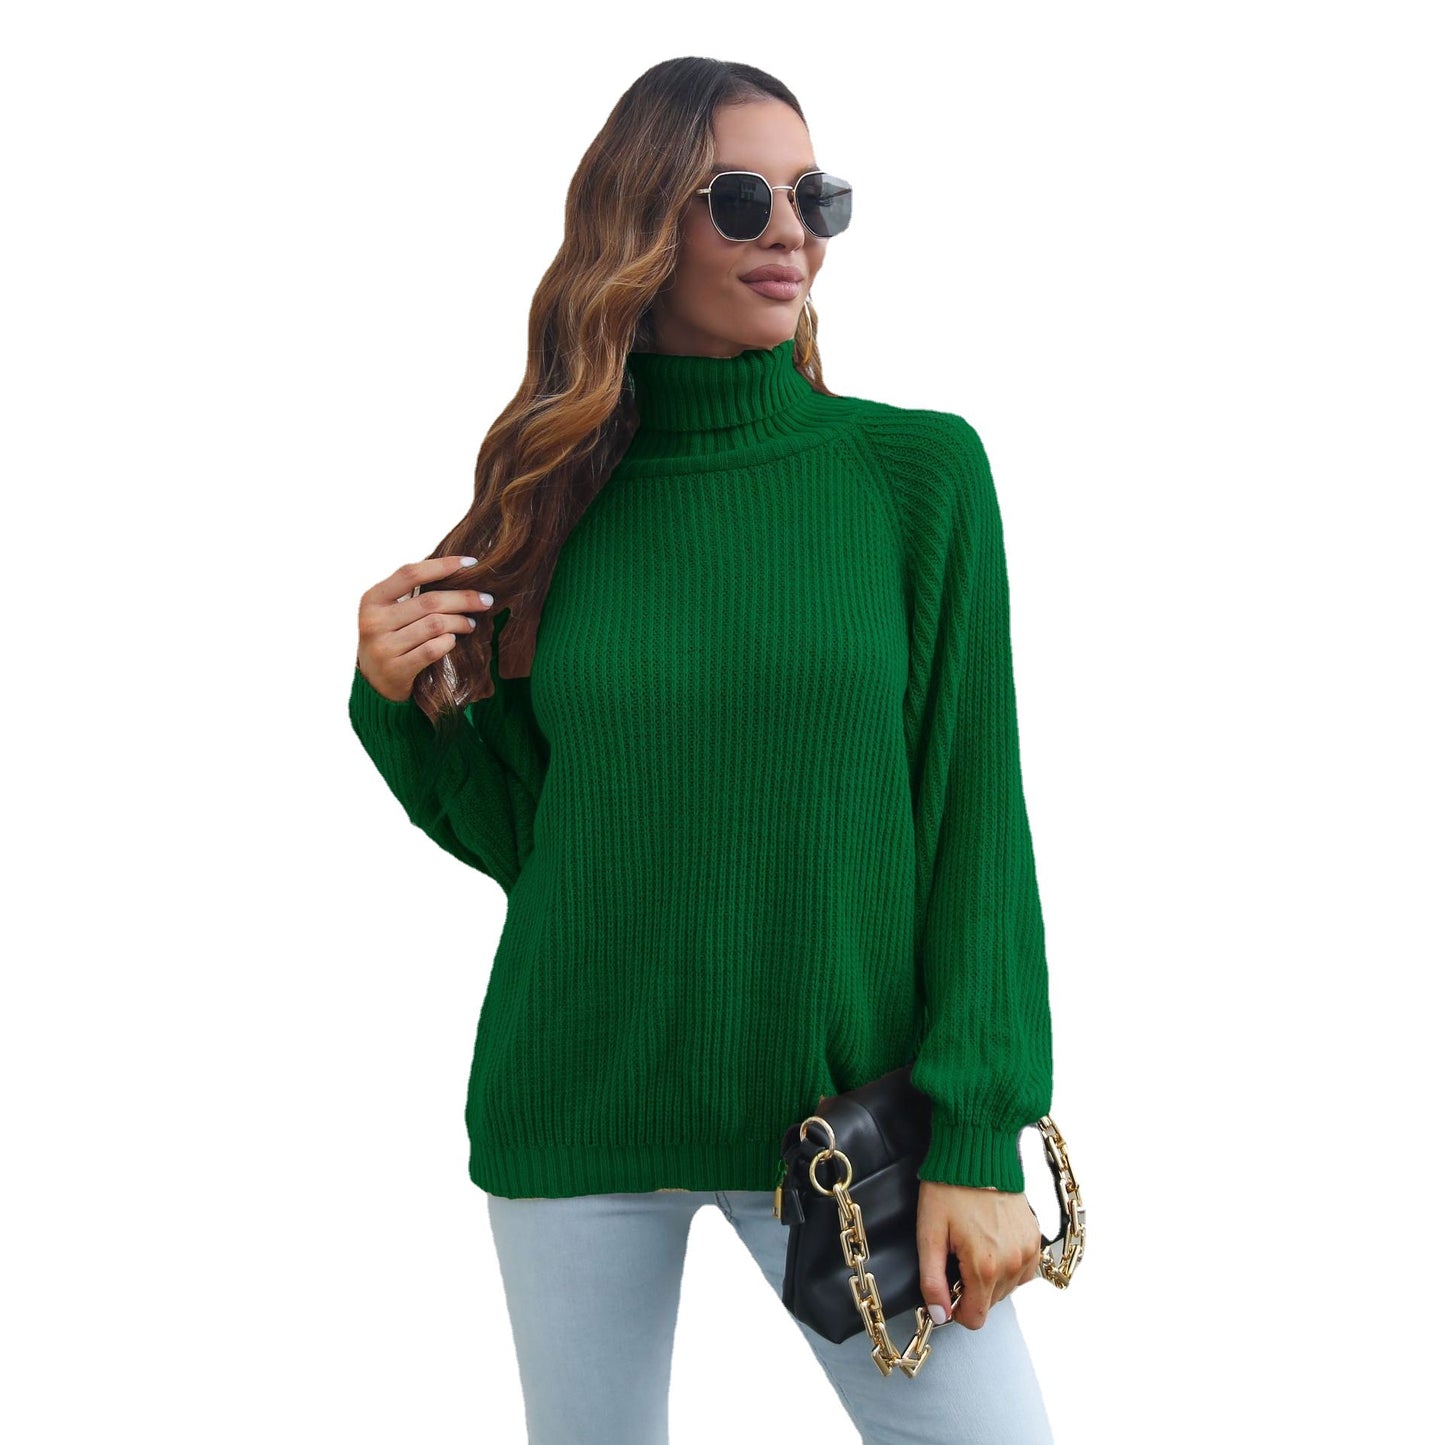 Turtleneck Sweater Women Raglan Sleeve Loose Autumn Winter Long Sleeve Knitwear Women Clothing Sweater